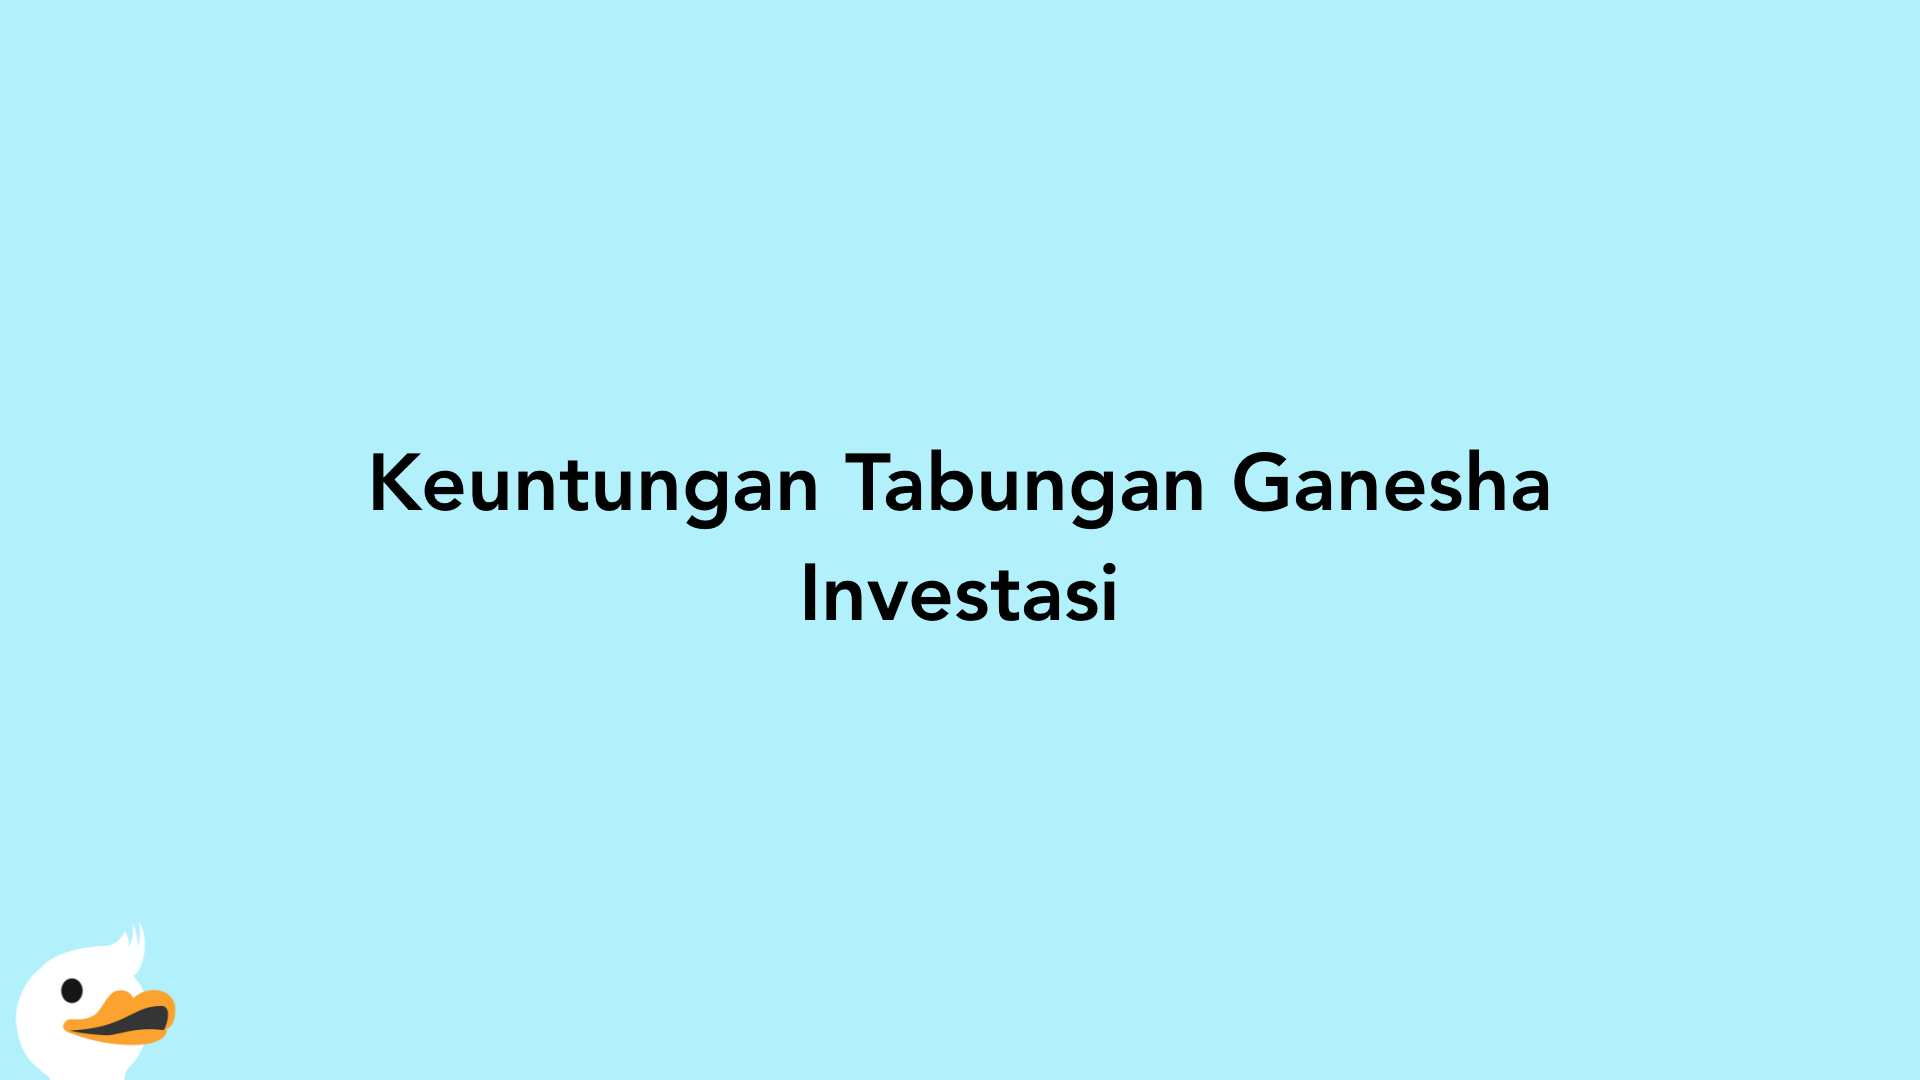 Keuntungan Tabungan Ganesha Investasi